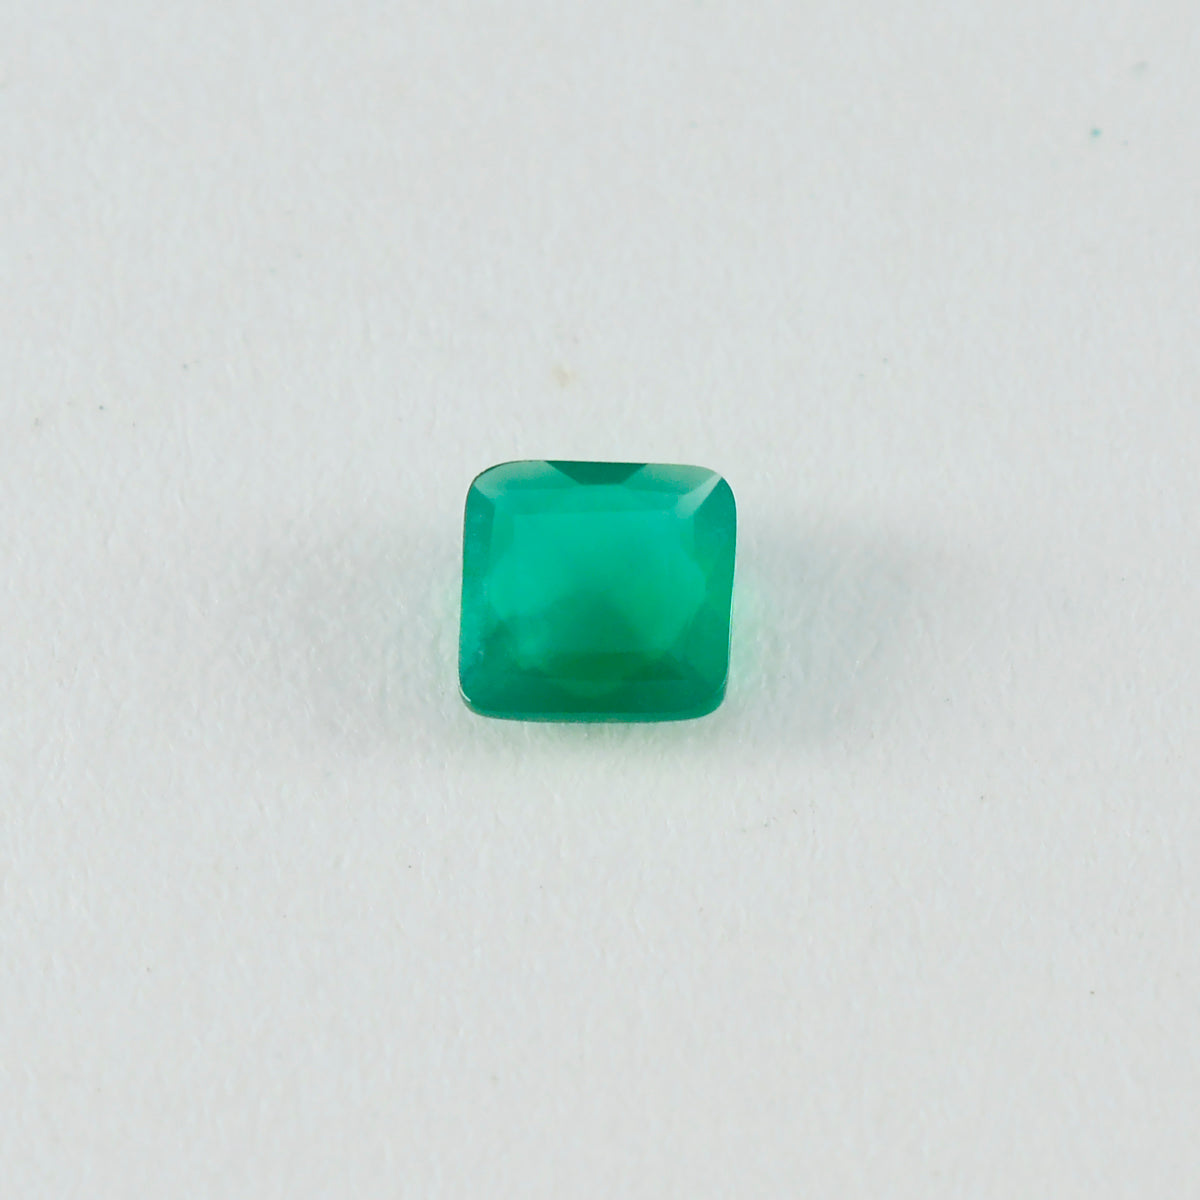 Riyogems 1 pieza de jaspe verde auténtico facetado, 8x8 mm, forma cuadrada, piedra preciosa de calidad increíble